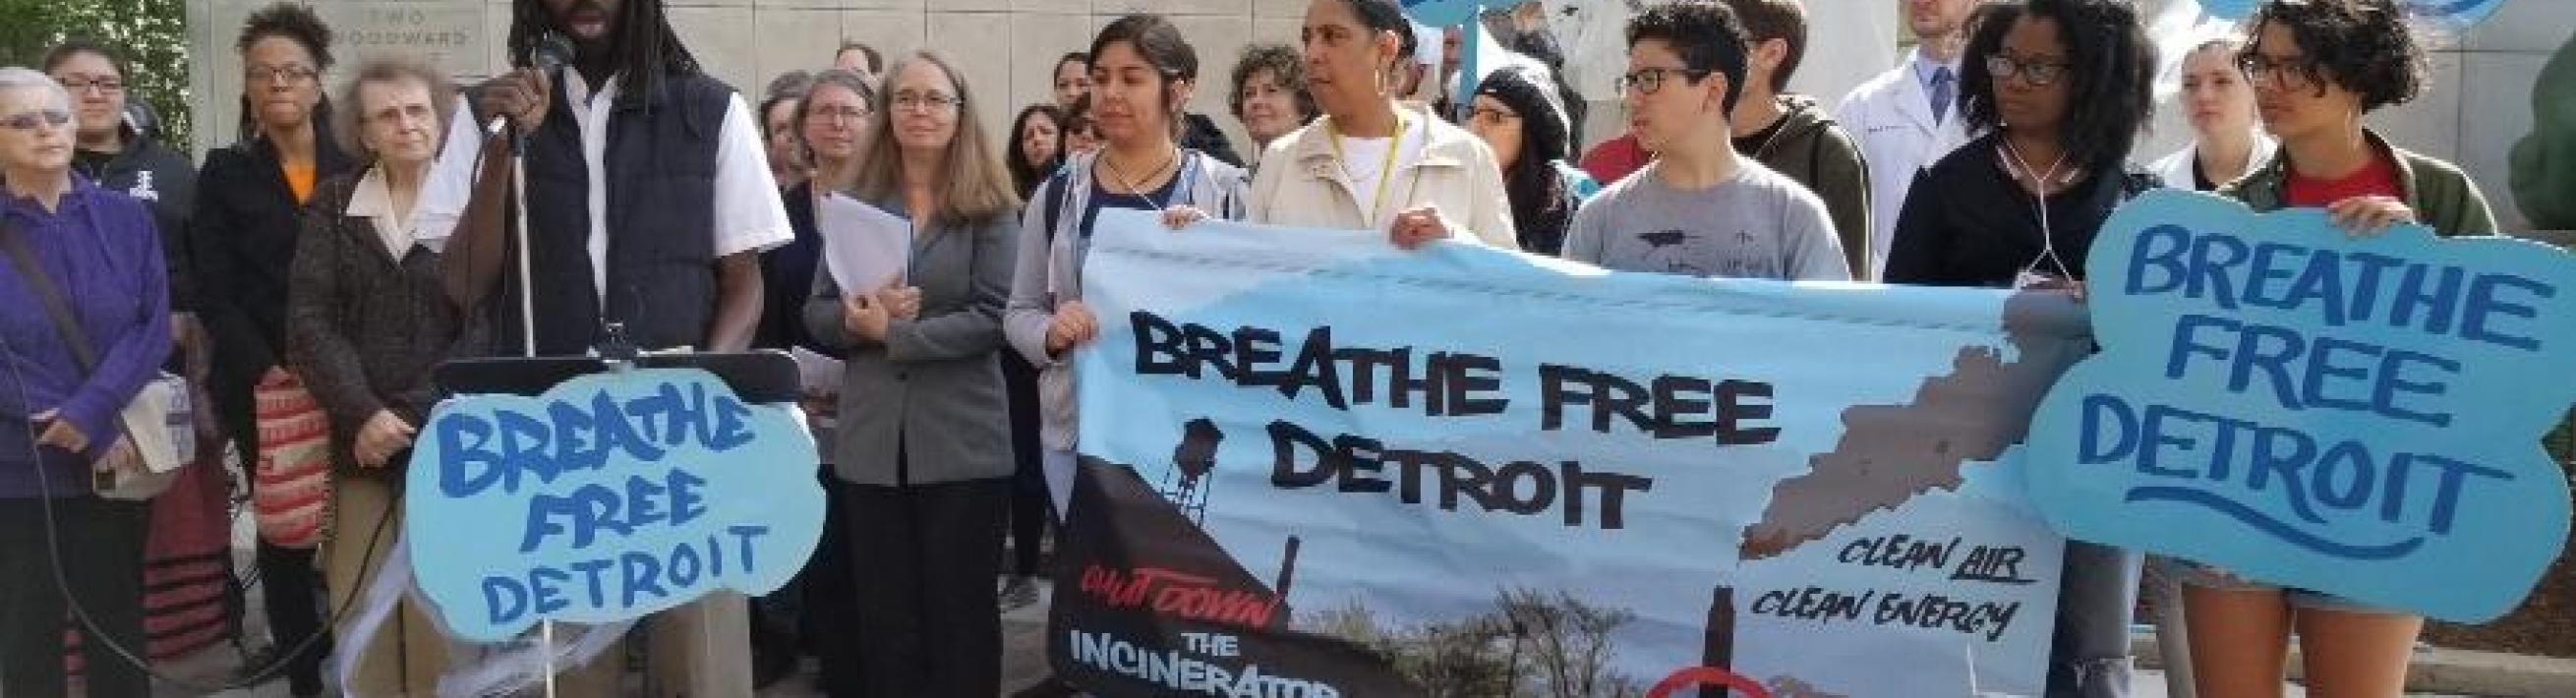 Breathe Free Detroit demonstration